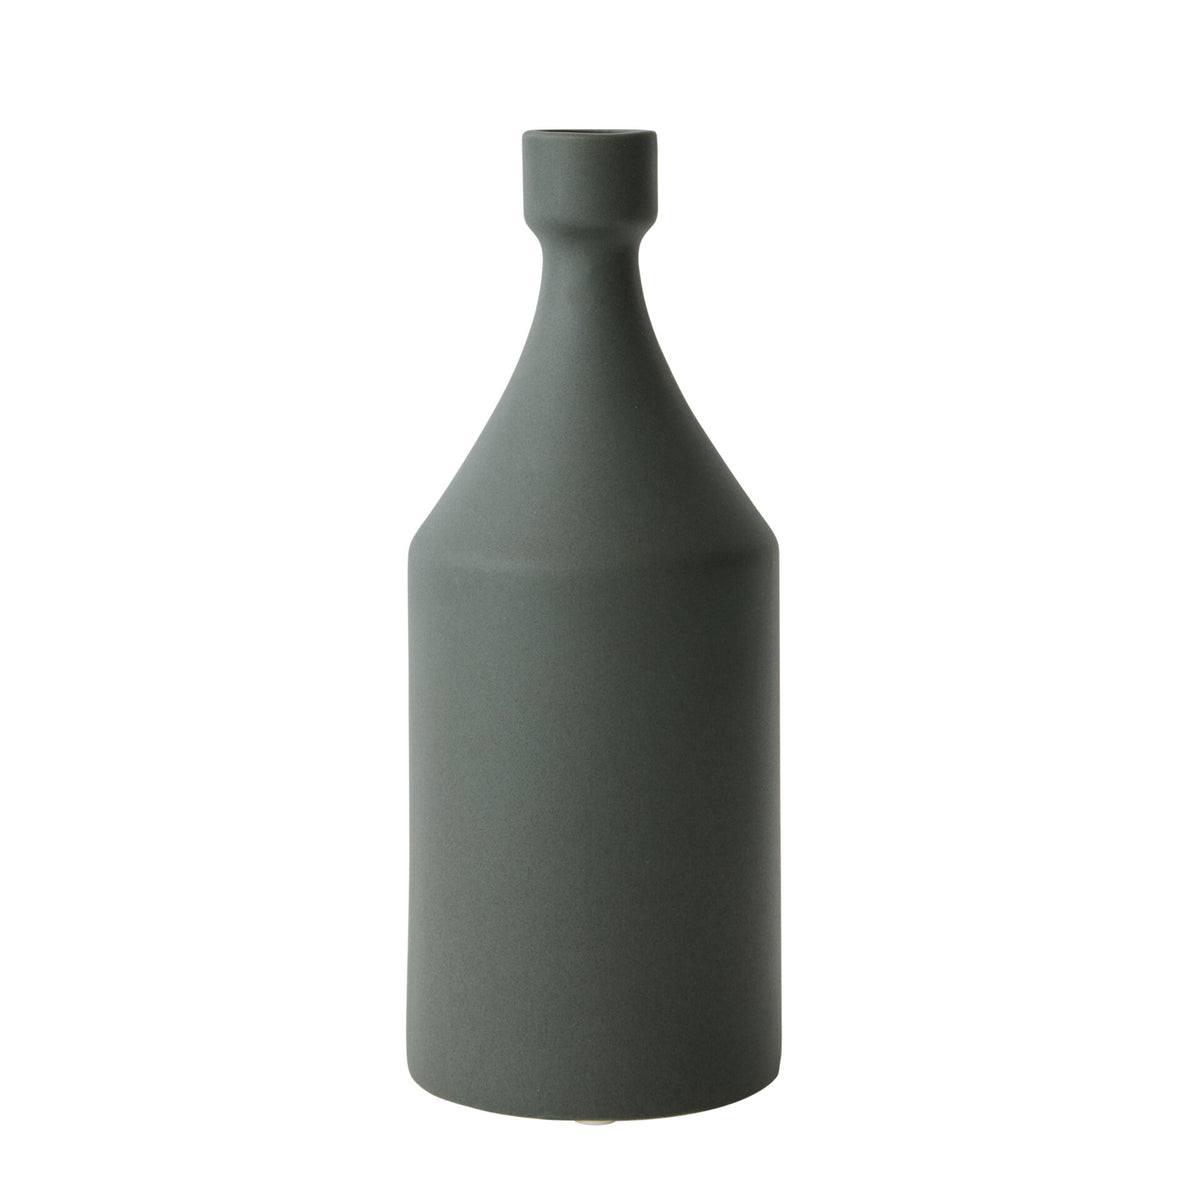 Handpainted Ceramic Curio Vase - Green - Notbrand